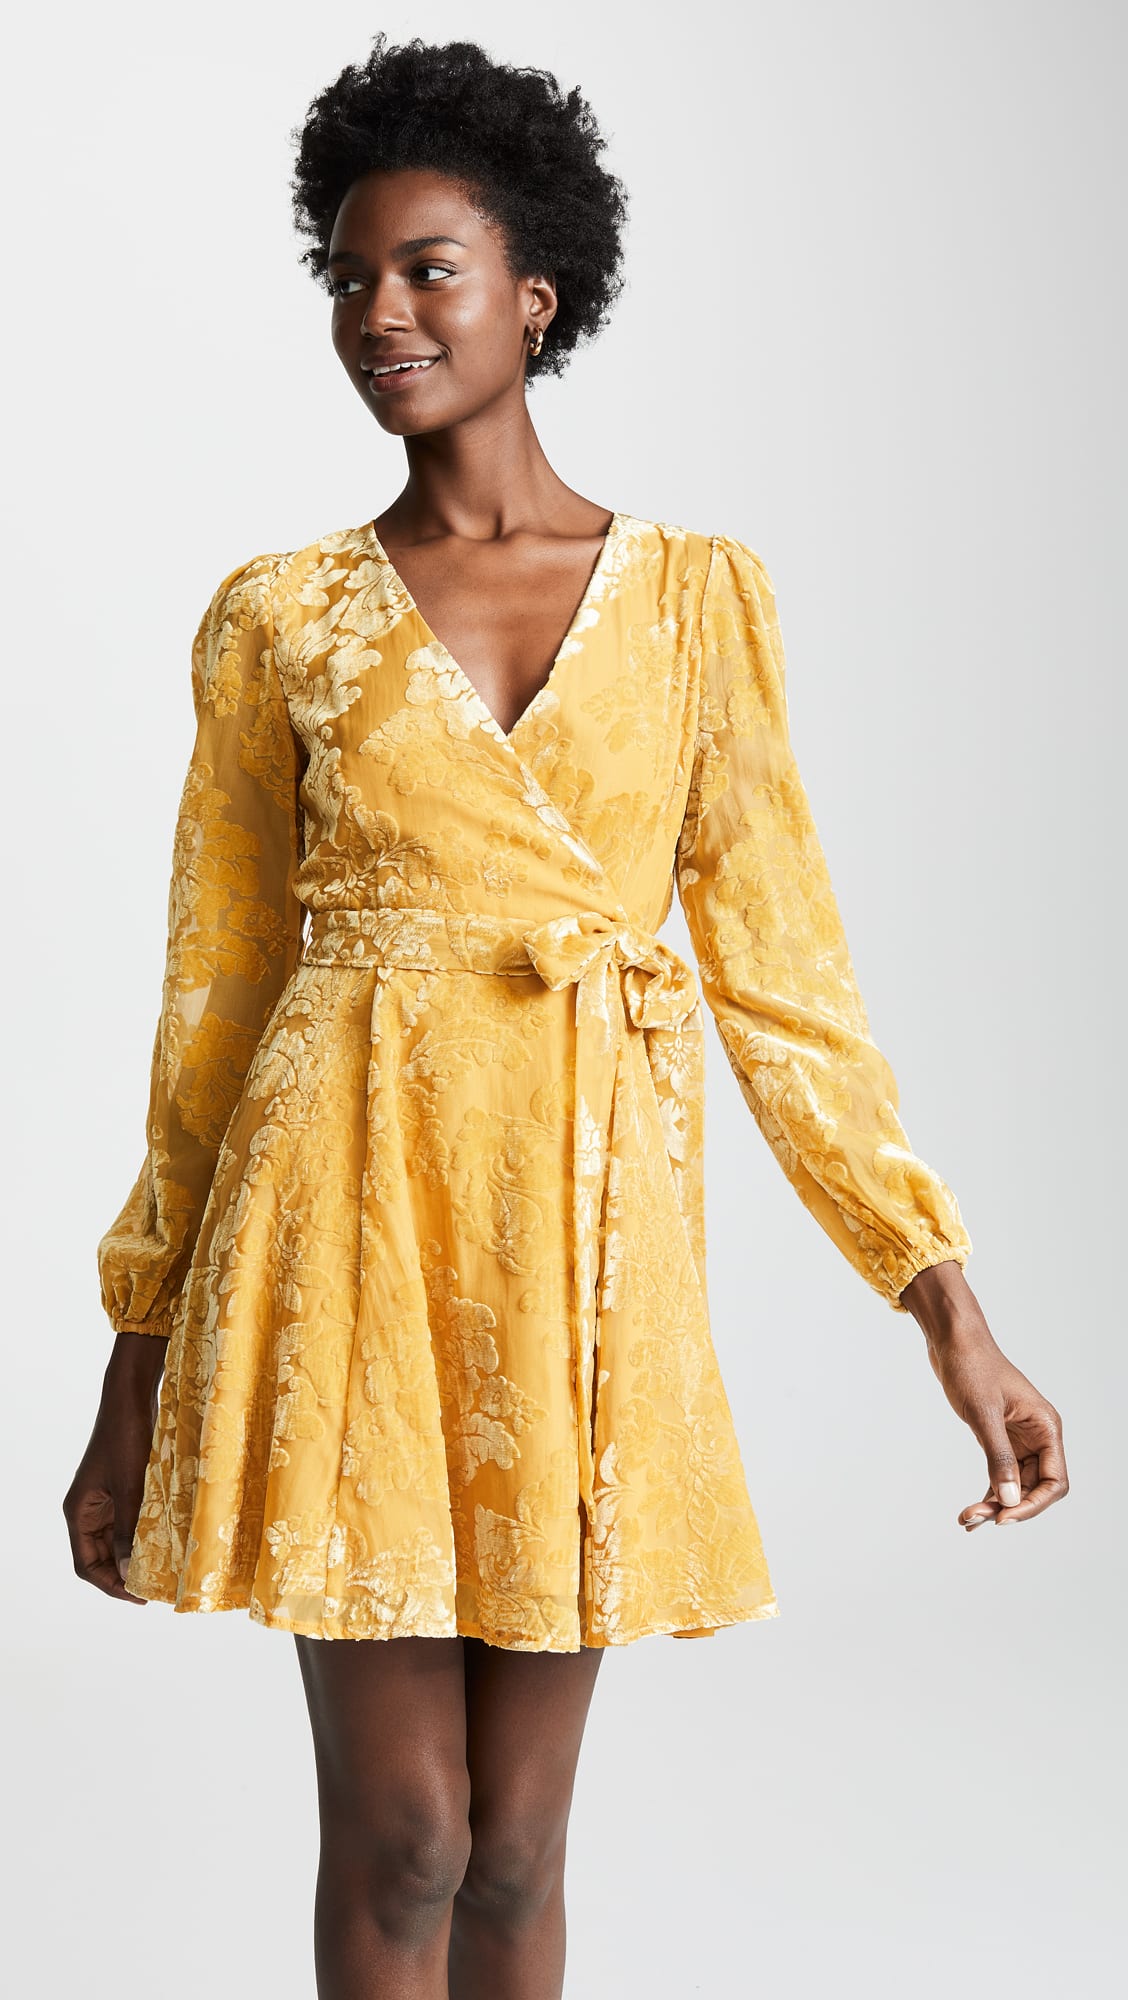 velvet yellow dress